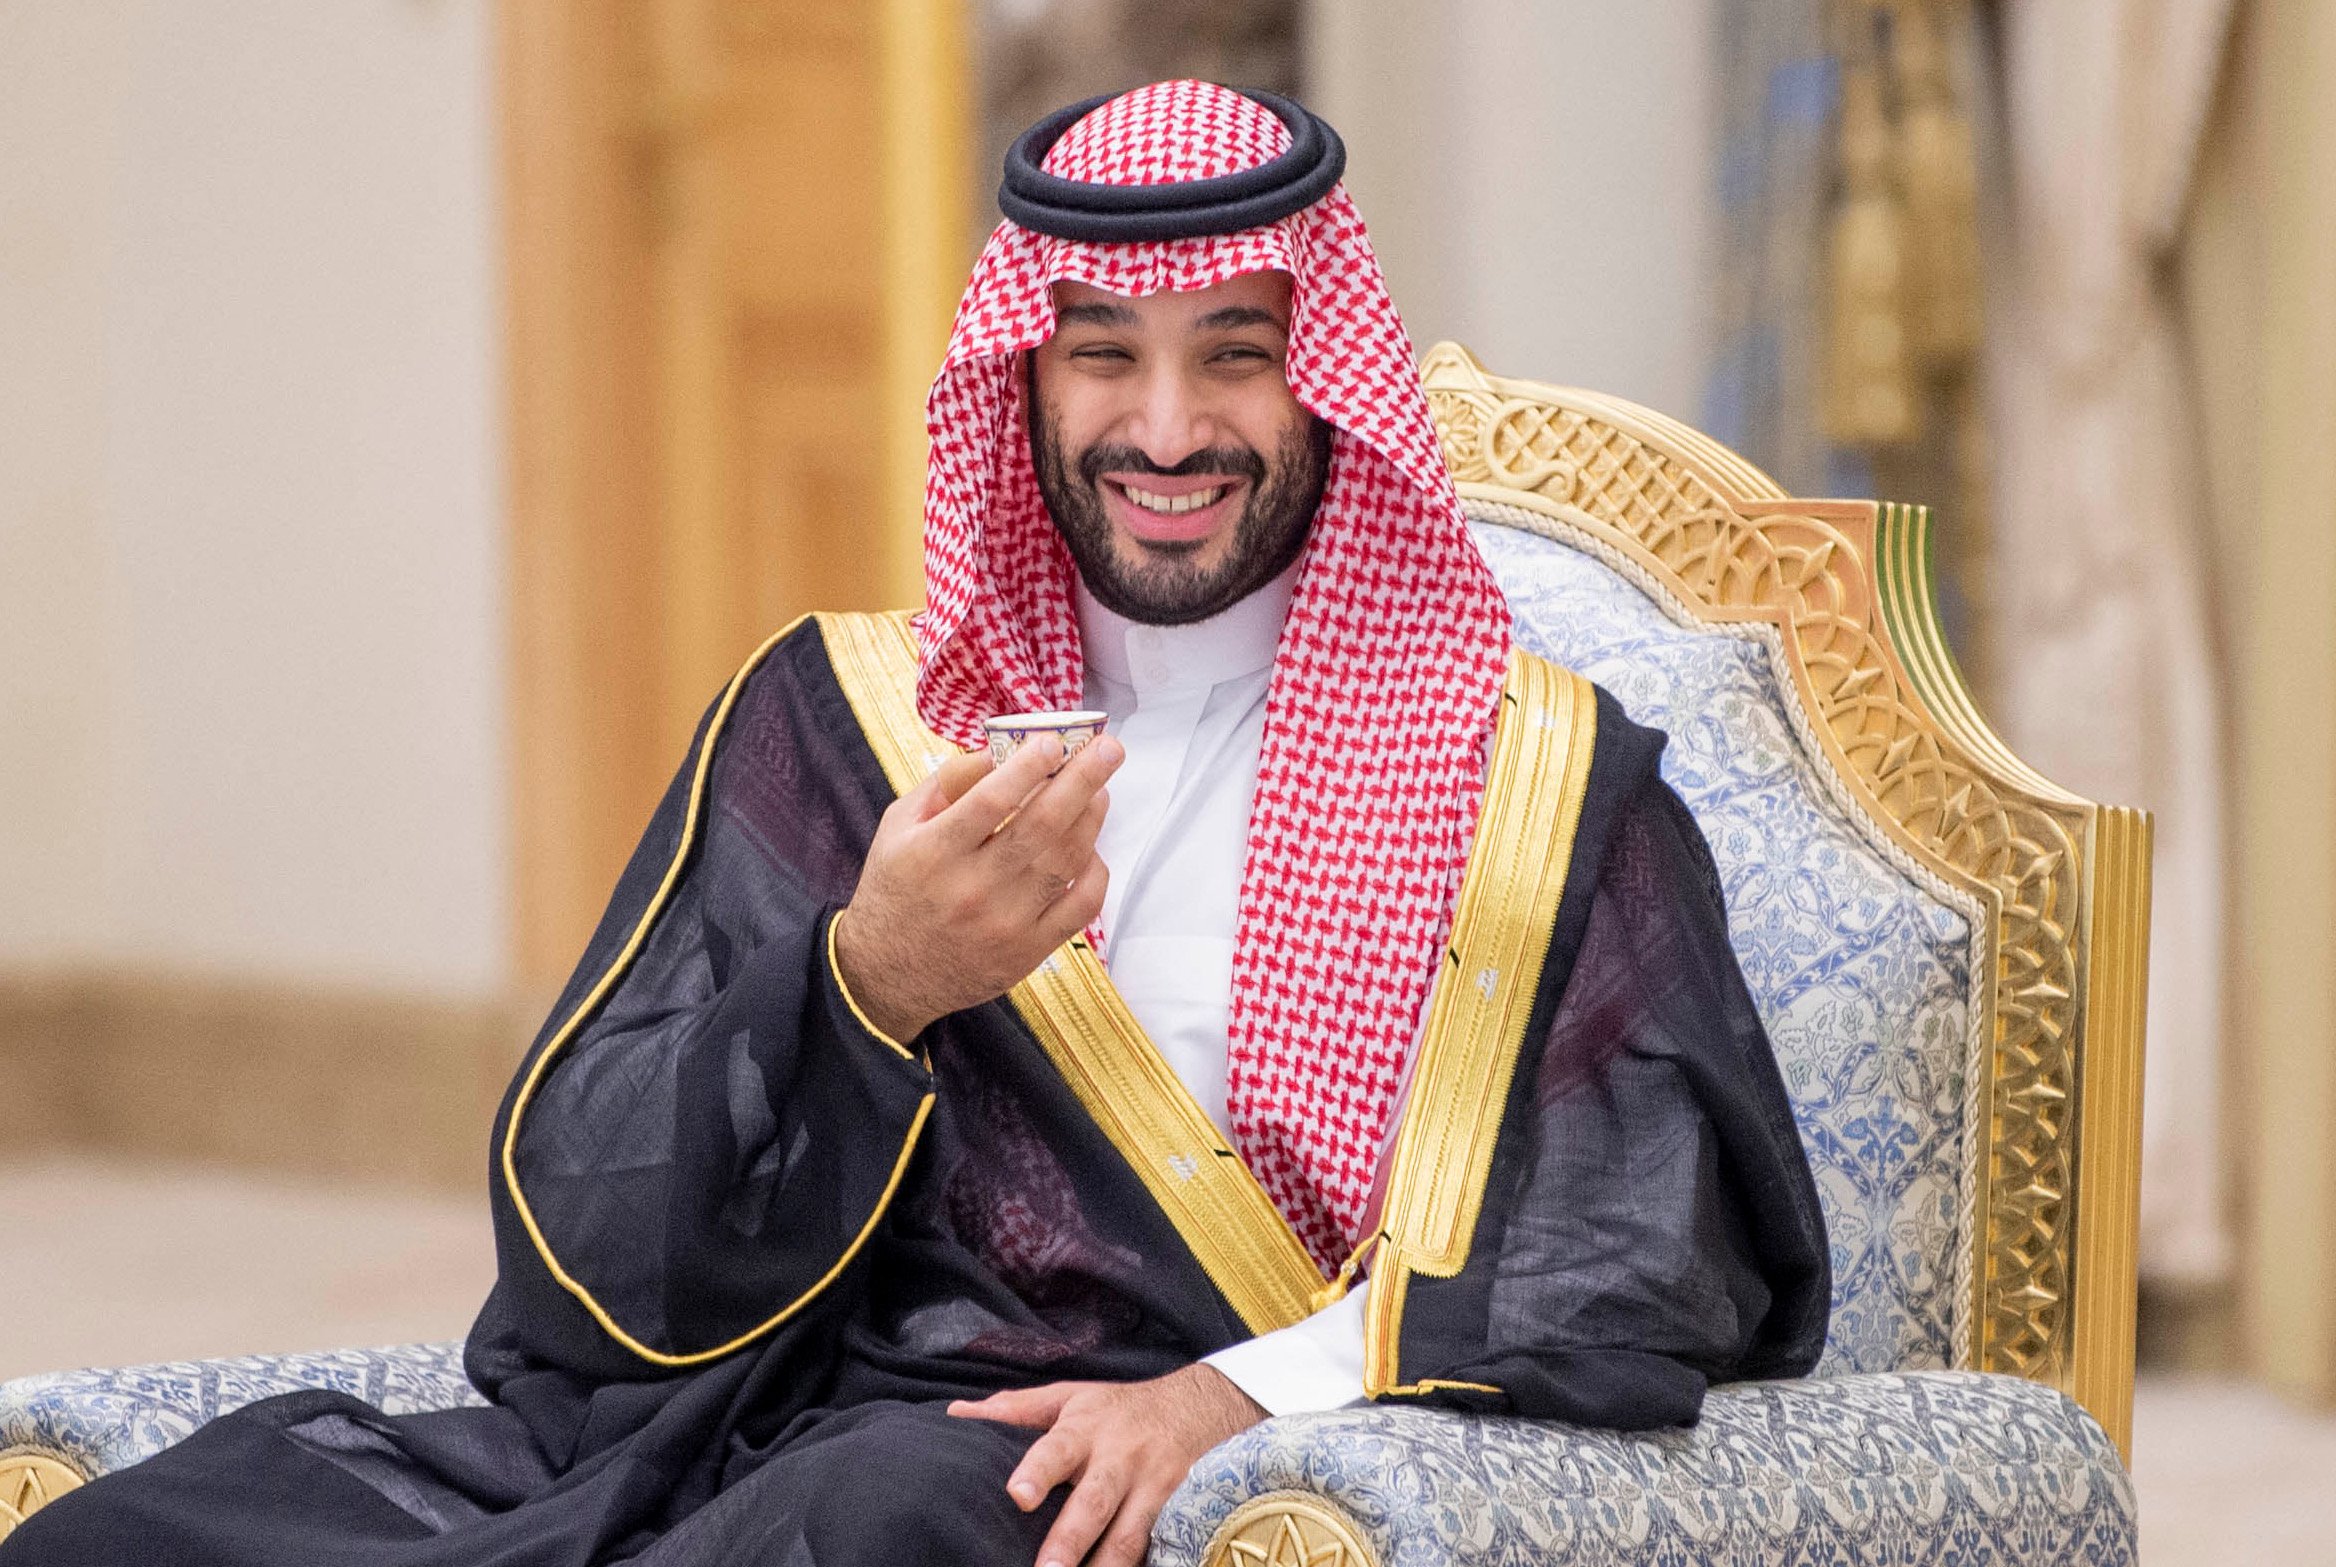 Турки аль сауд. Мухаммед Бин Салман. Принц Салман Саудовская Аравия. Наследный принц Мухаммед Бен Салман. Мухаммед ибн Салман Аль Сауд наследные принцы Саудовской Аравии.